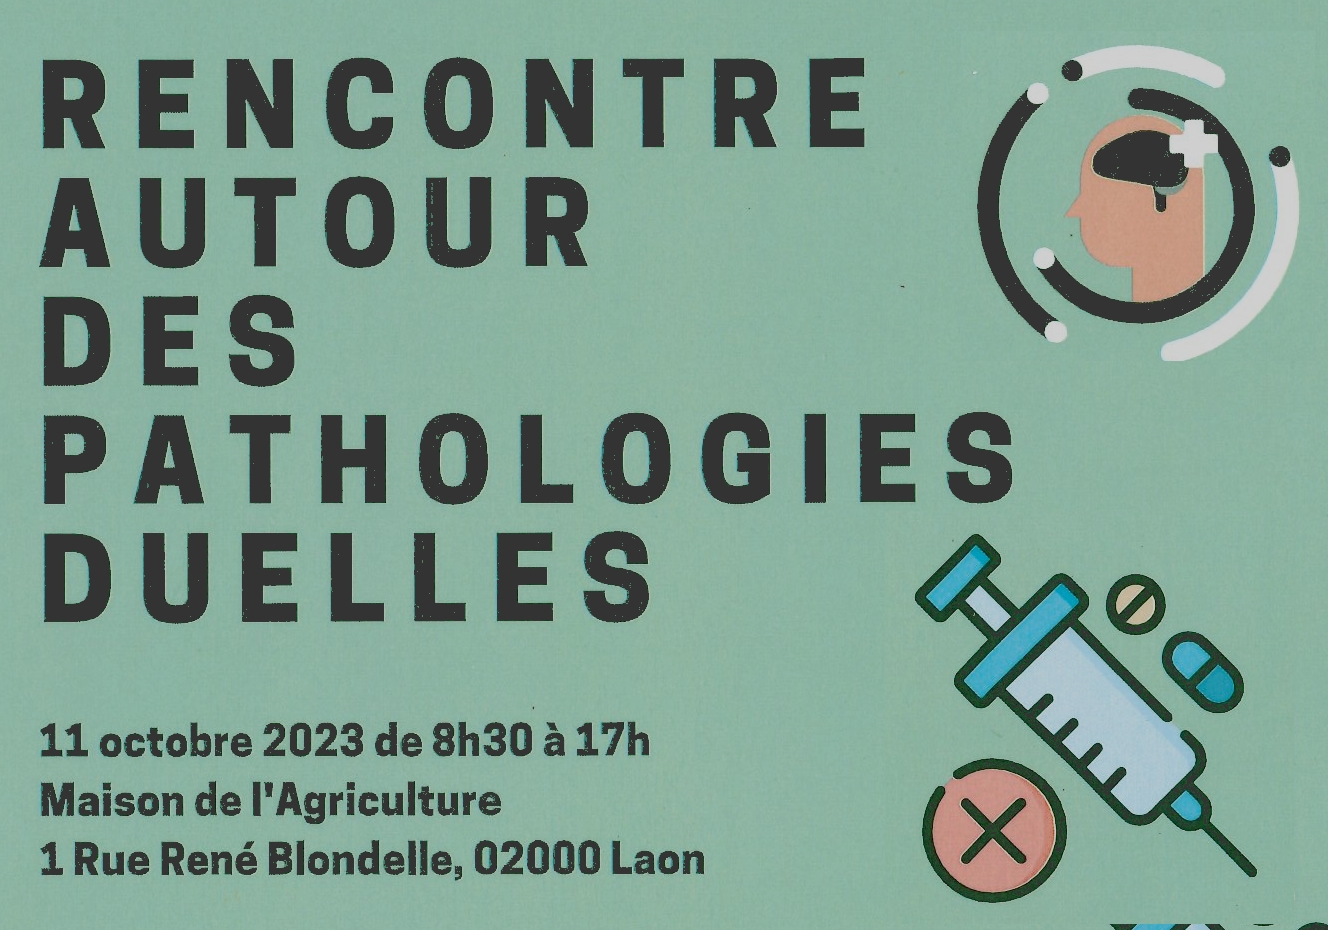 You are currently viewing Rencontre autour des pathologies duelles à Laon